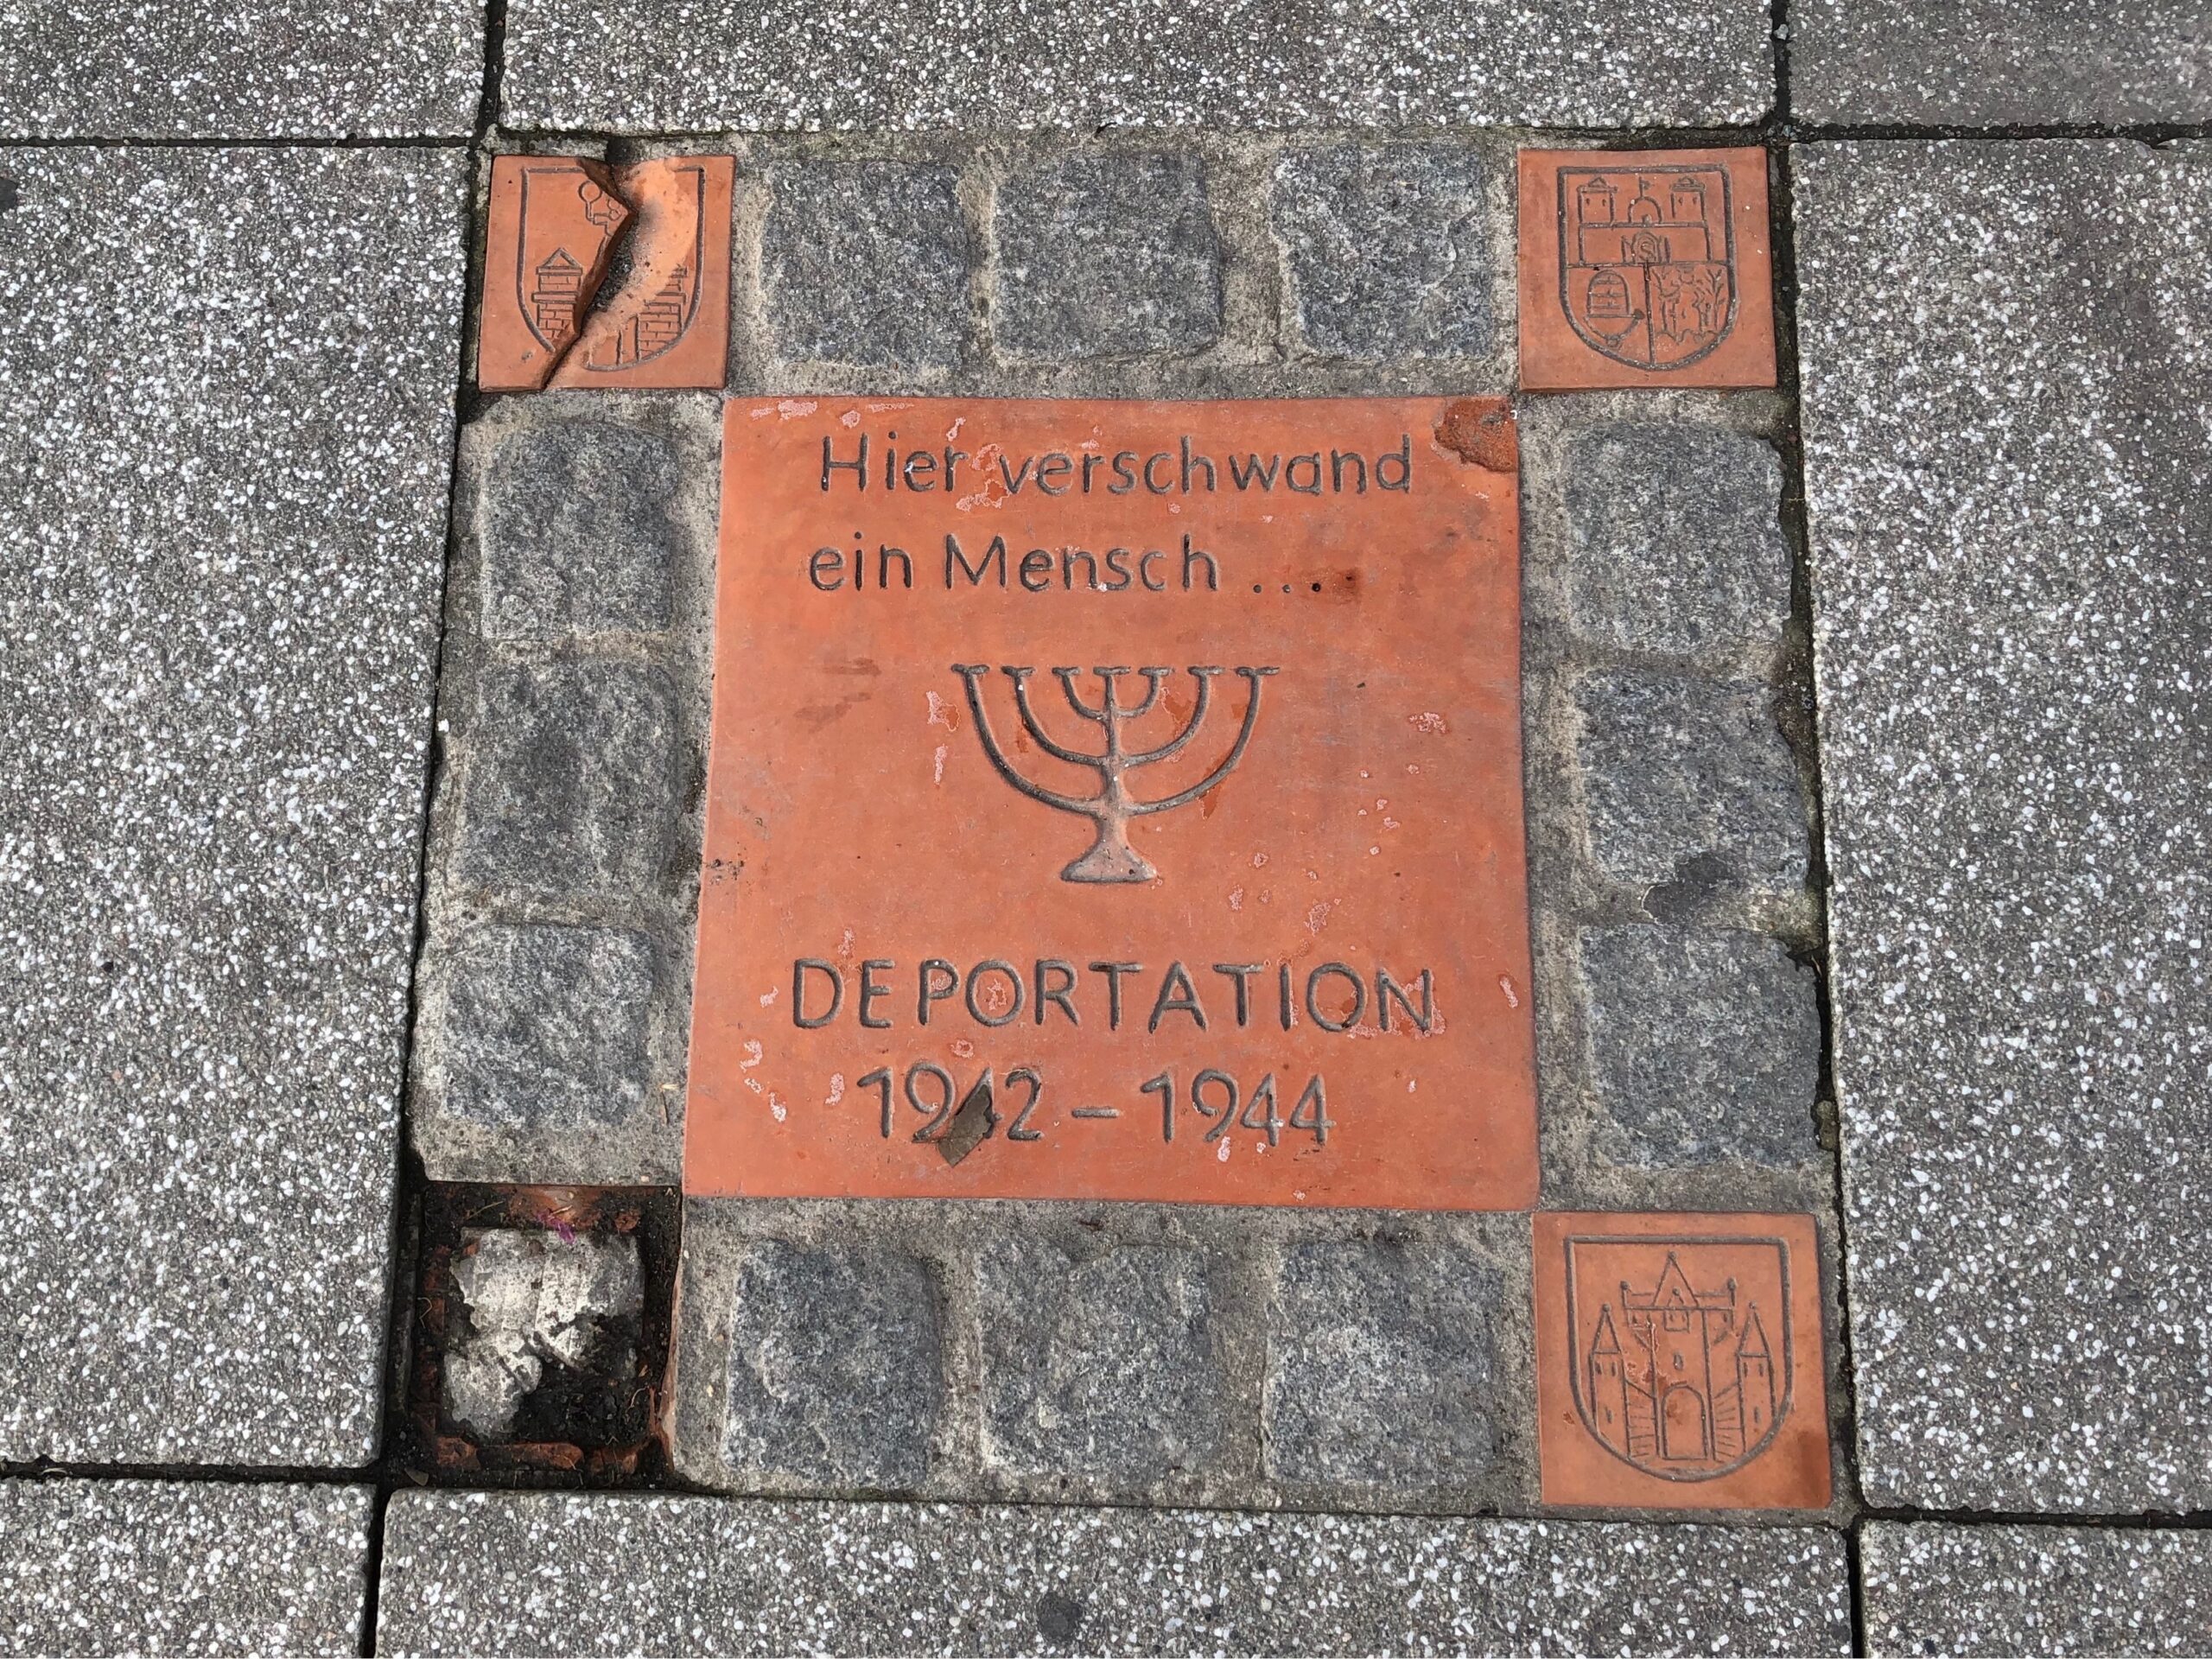 In den Gehweg eingelassene Gedenkplatte mit der Inschrift "Hier verschwand eine Mensch ... Deportaion 1942 - 1944"